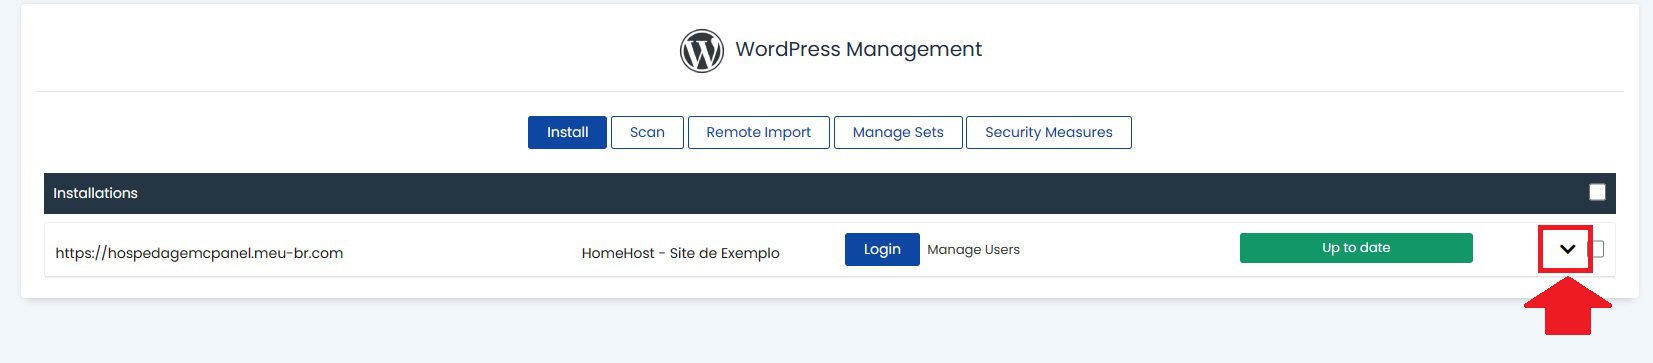 No WordPress manager, selecione a hospedagem e clique na seta para mostrar as configuraçoes do wordpress e poder ativar o modo debug do wordpress